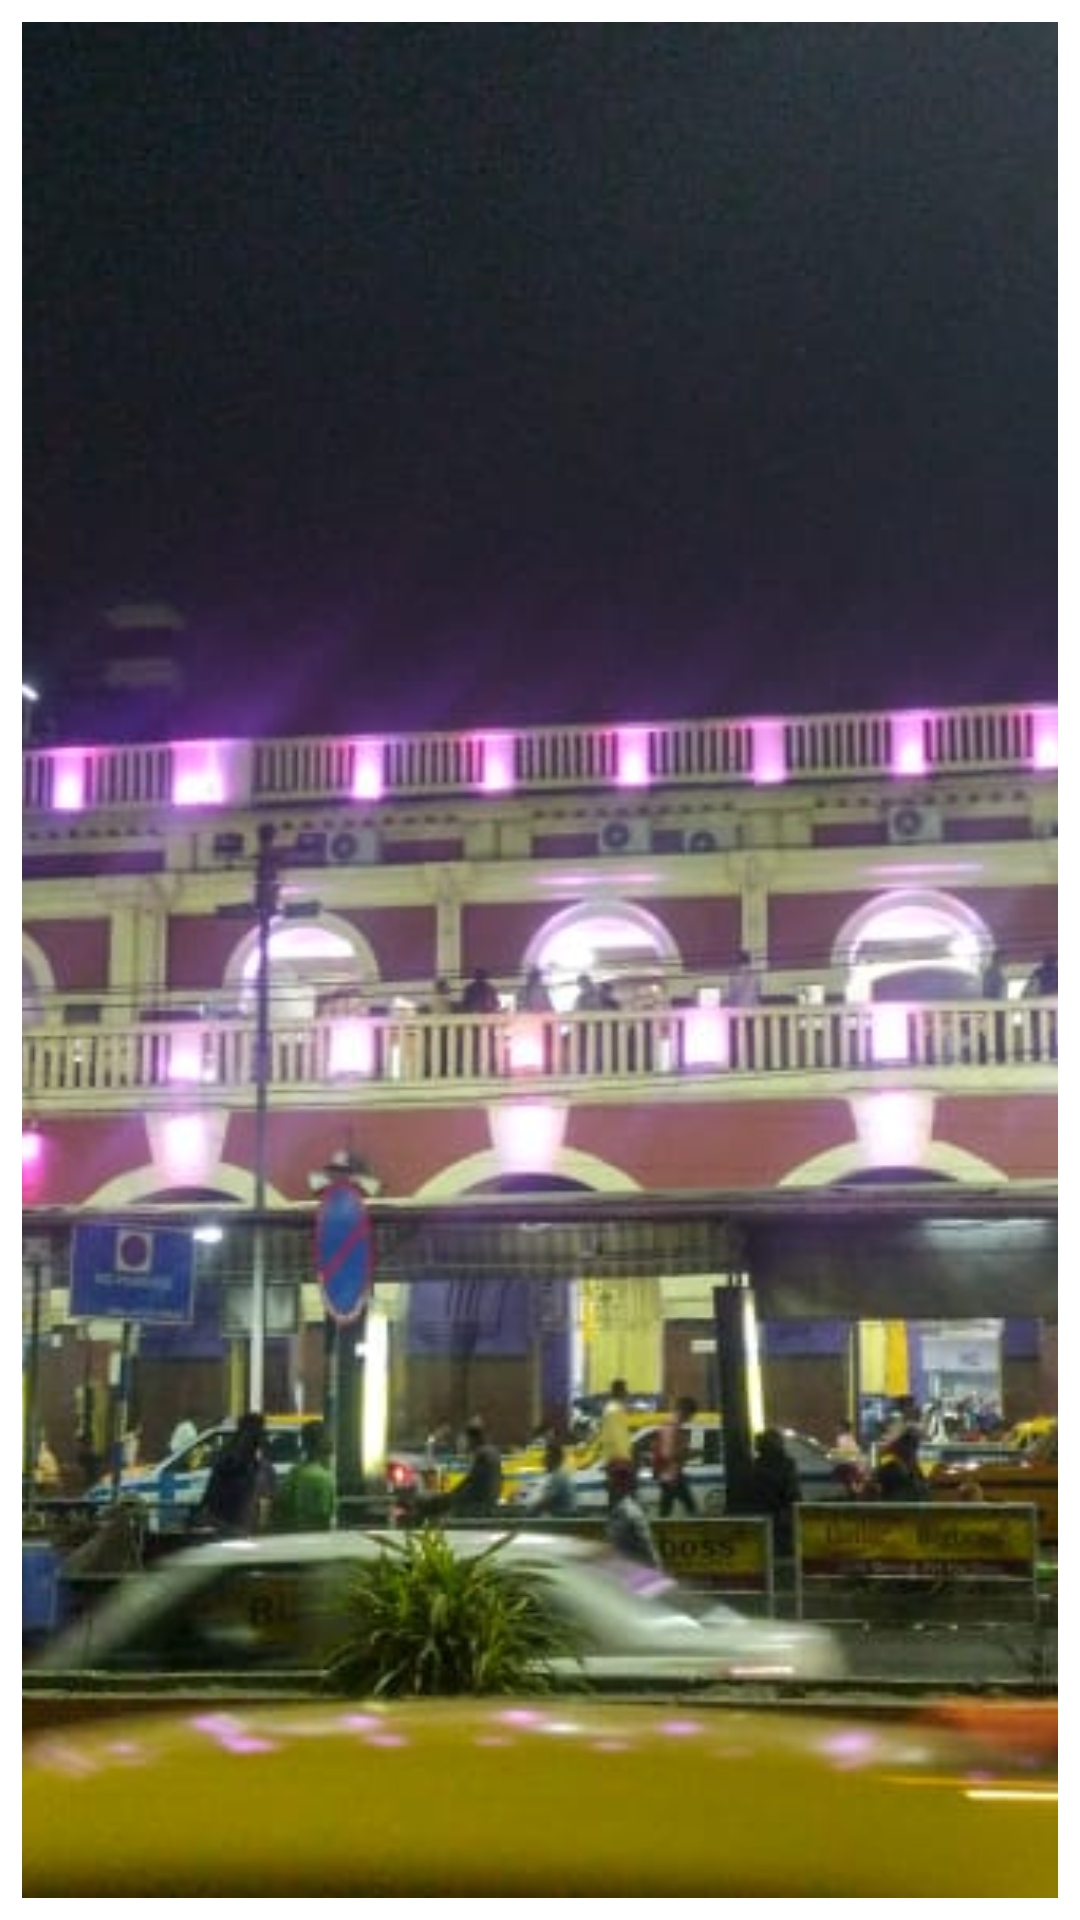 भारत का सबसे पुराना रेलवे स्टेशन कौन सा है और आज कैसा दिखता है 